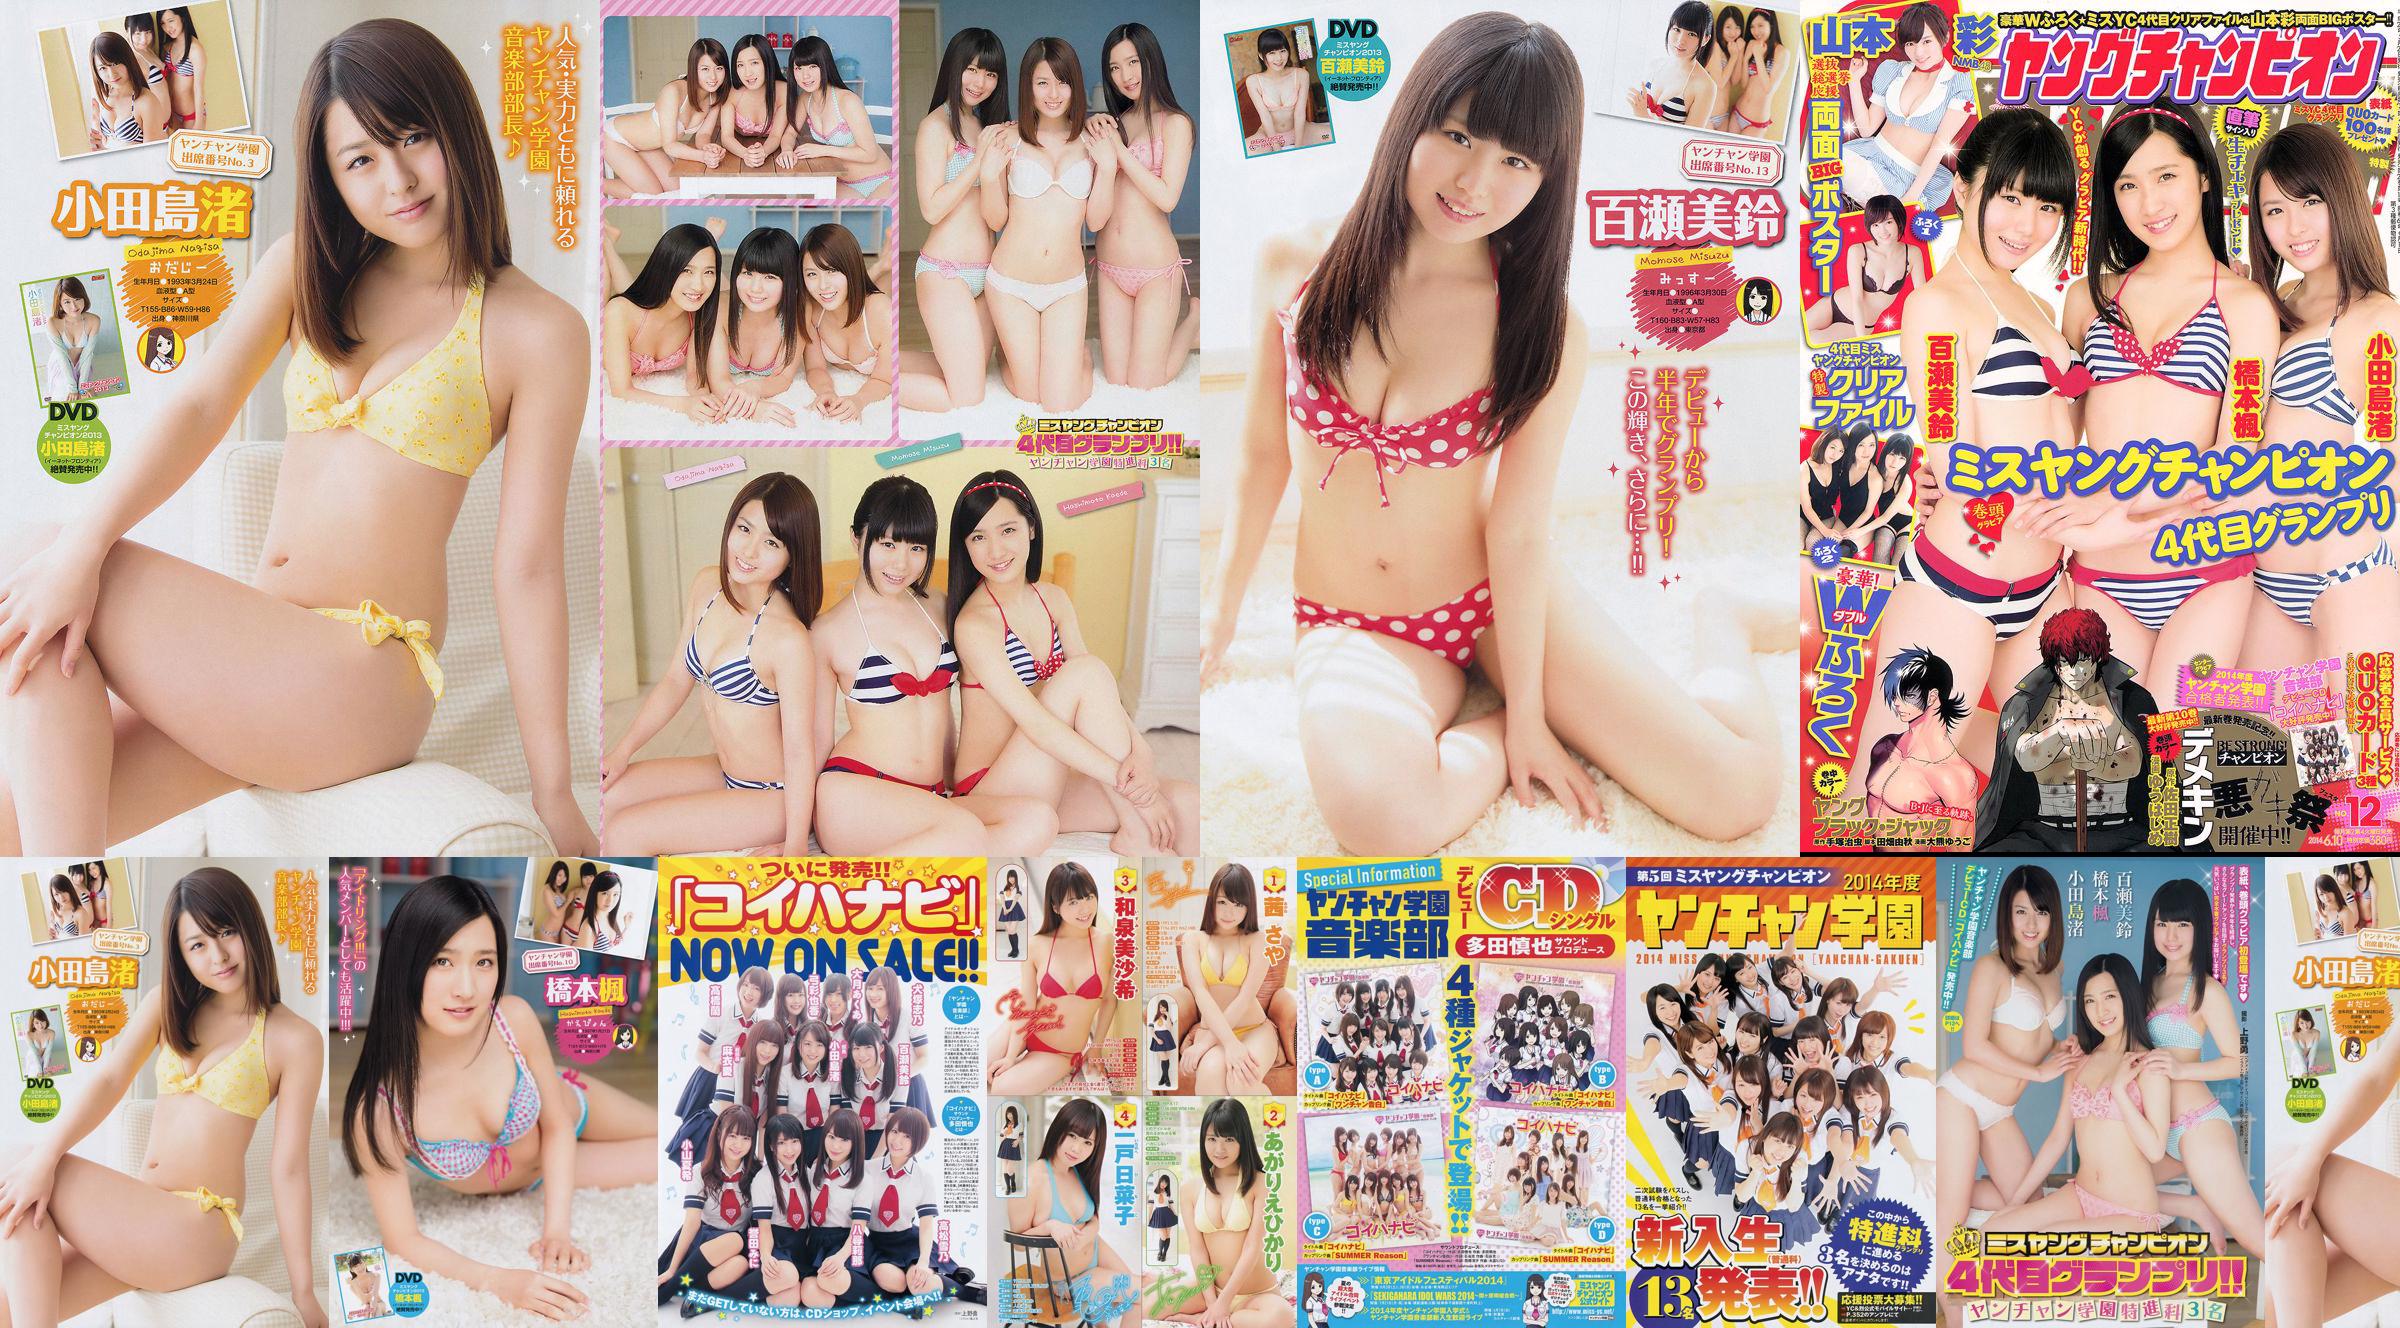 [Junger Champion] Nagisa Odajima Kaede Hashimoto Misuzu Momose 2014 Nr. 12 Foto No.504e1b Seite 1